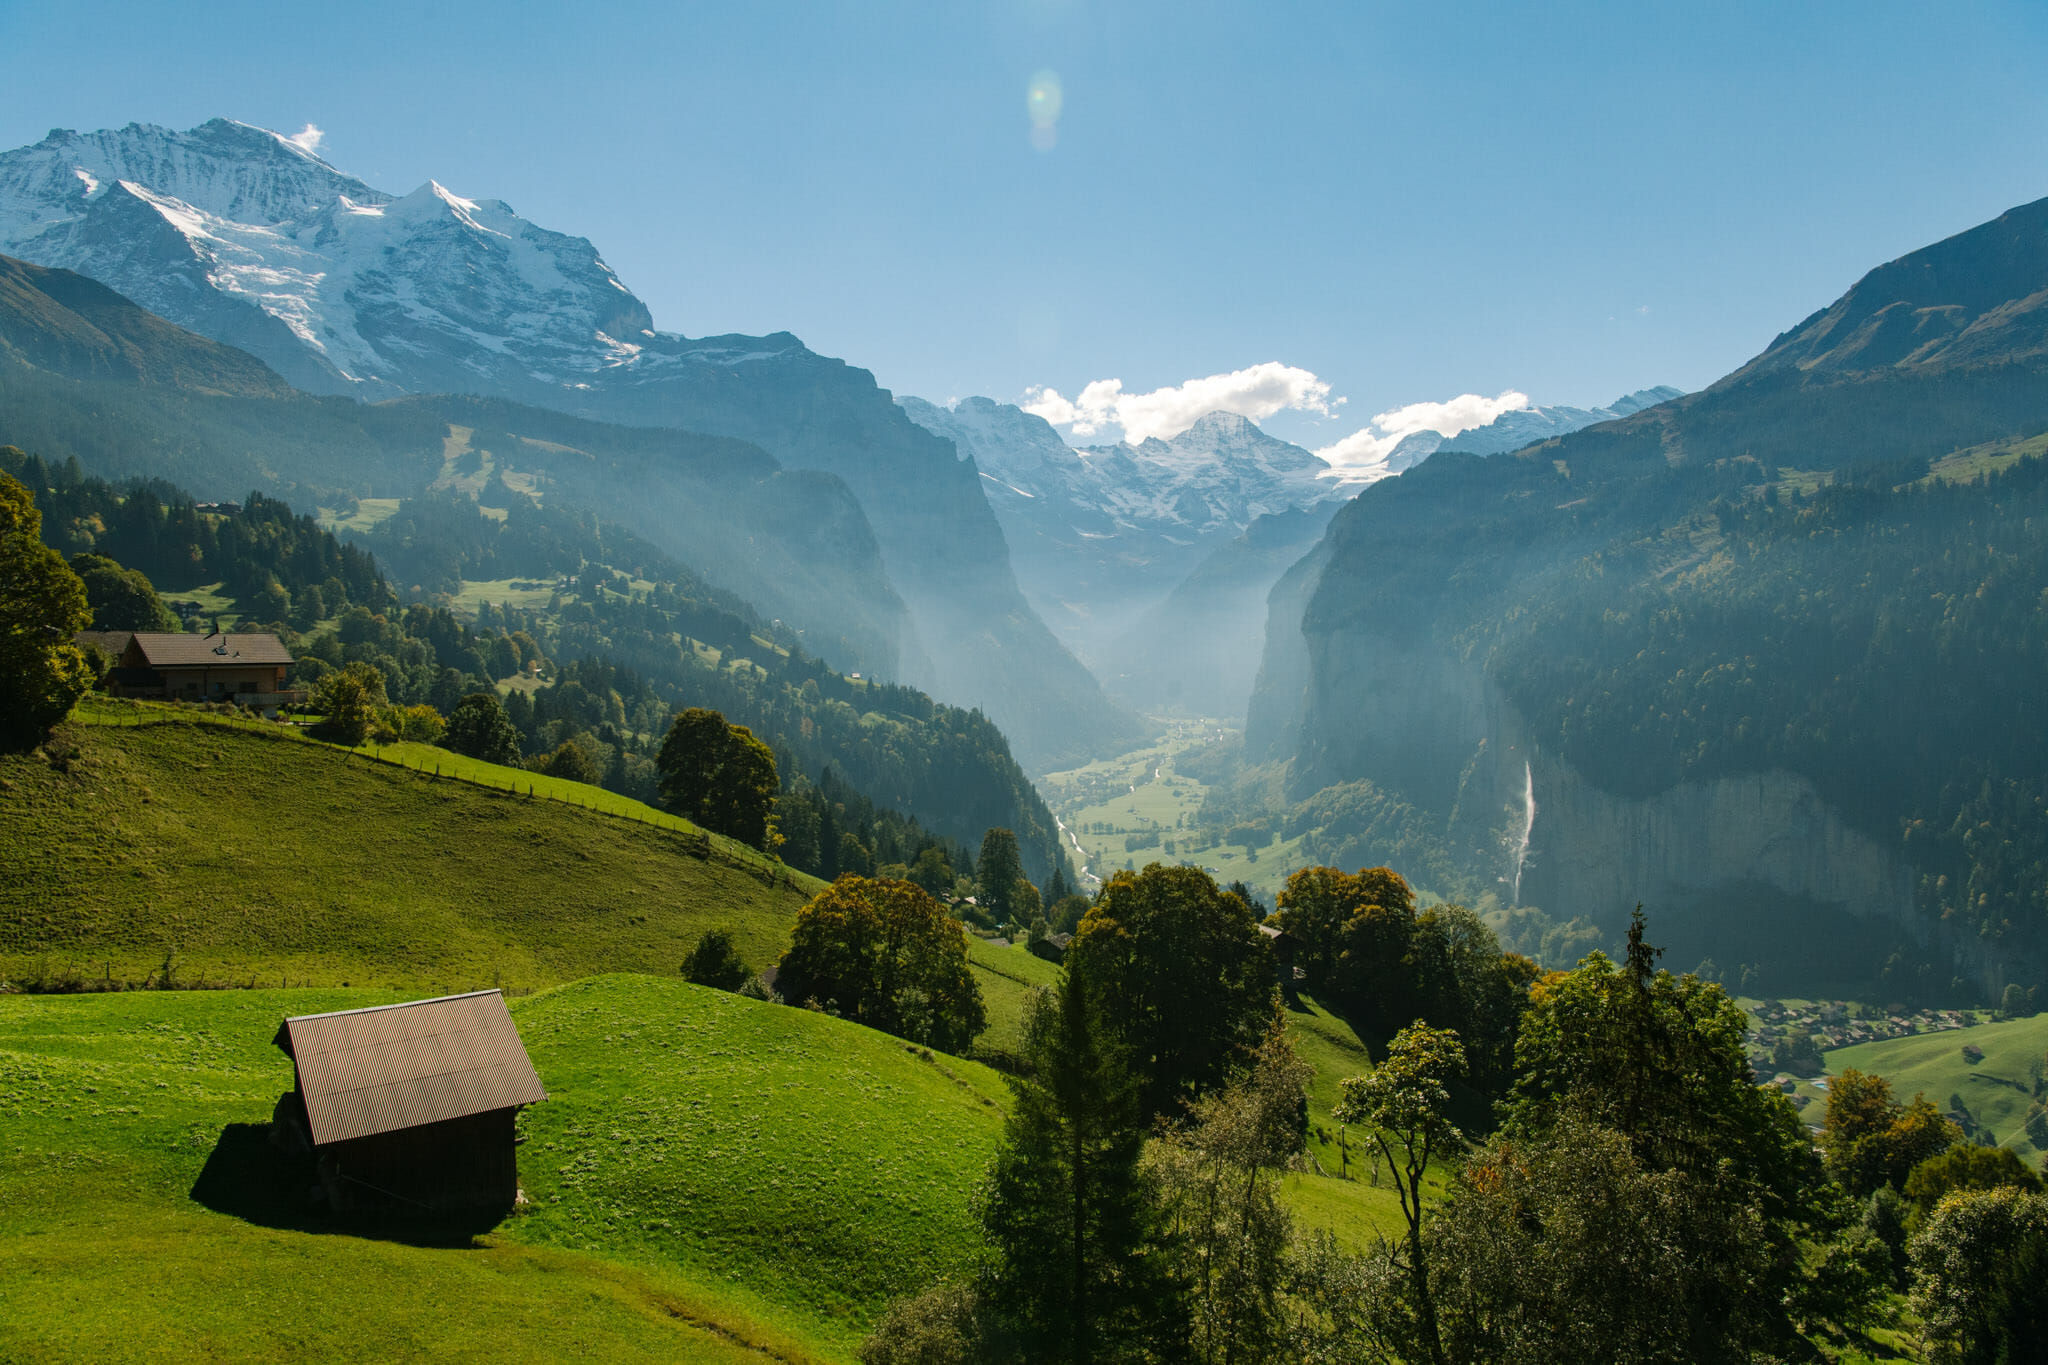 Overlooking the valley in Switzerland